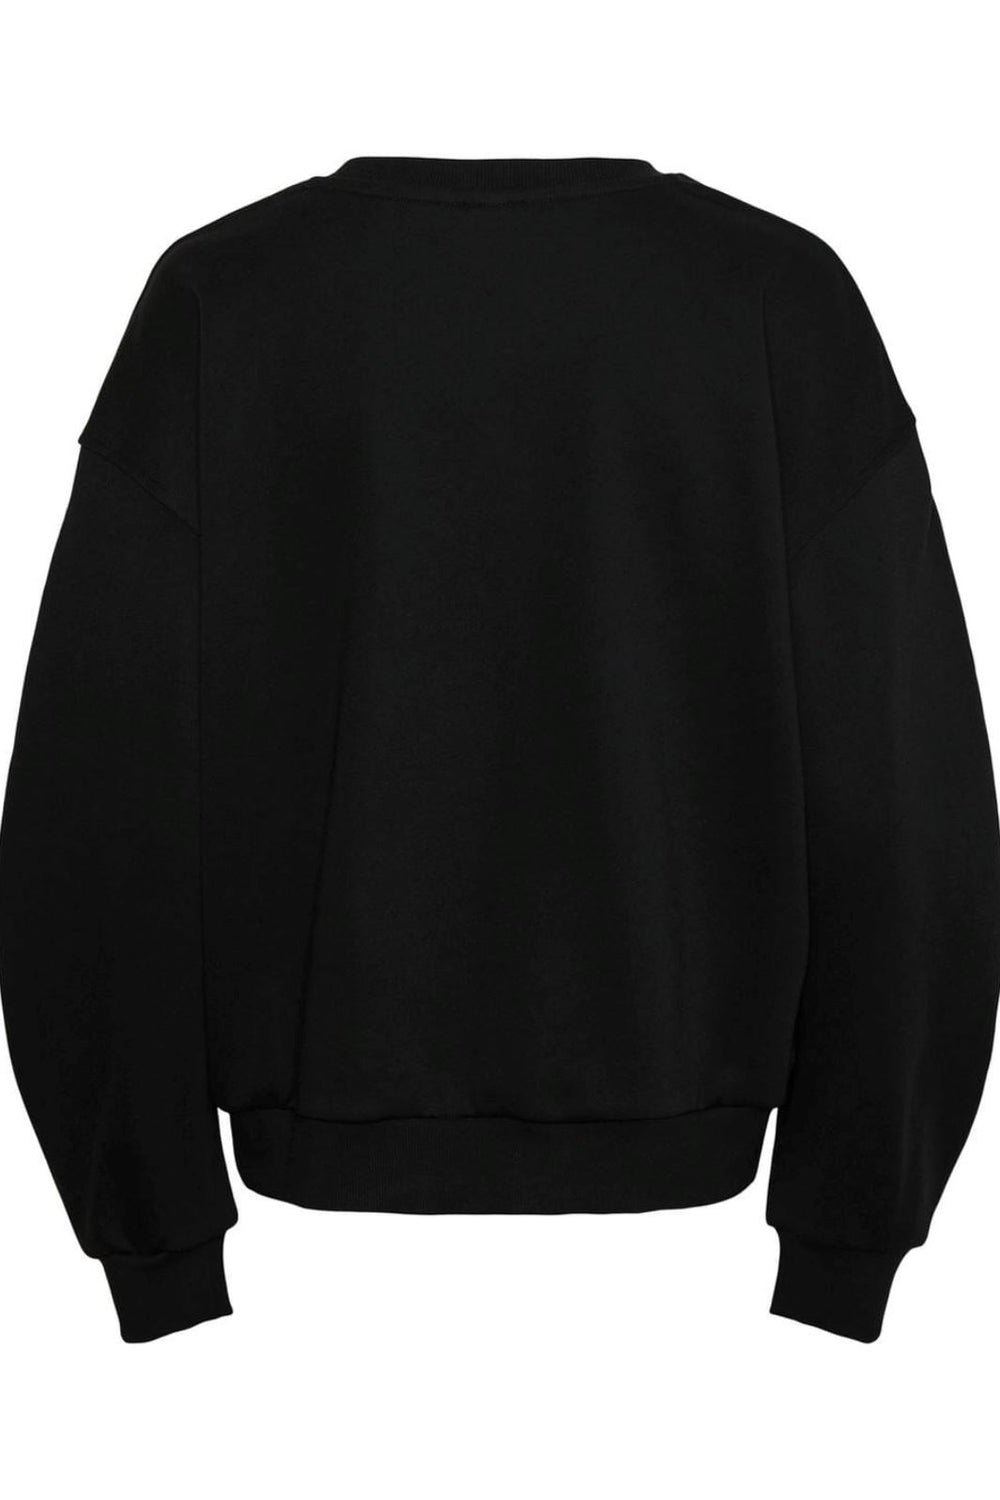 Y.A.S - Yassedina Ls Sweatshirt - 4545849 Black Sweatshirts 